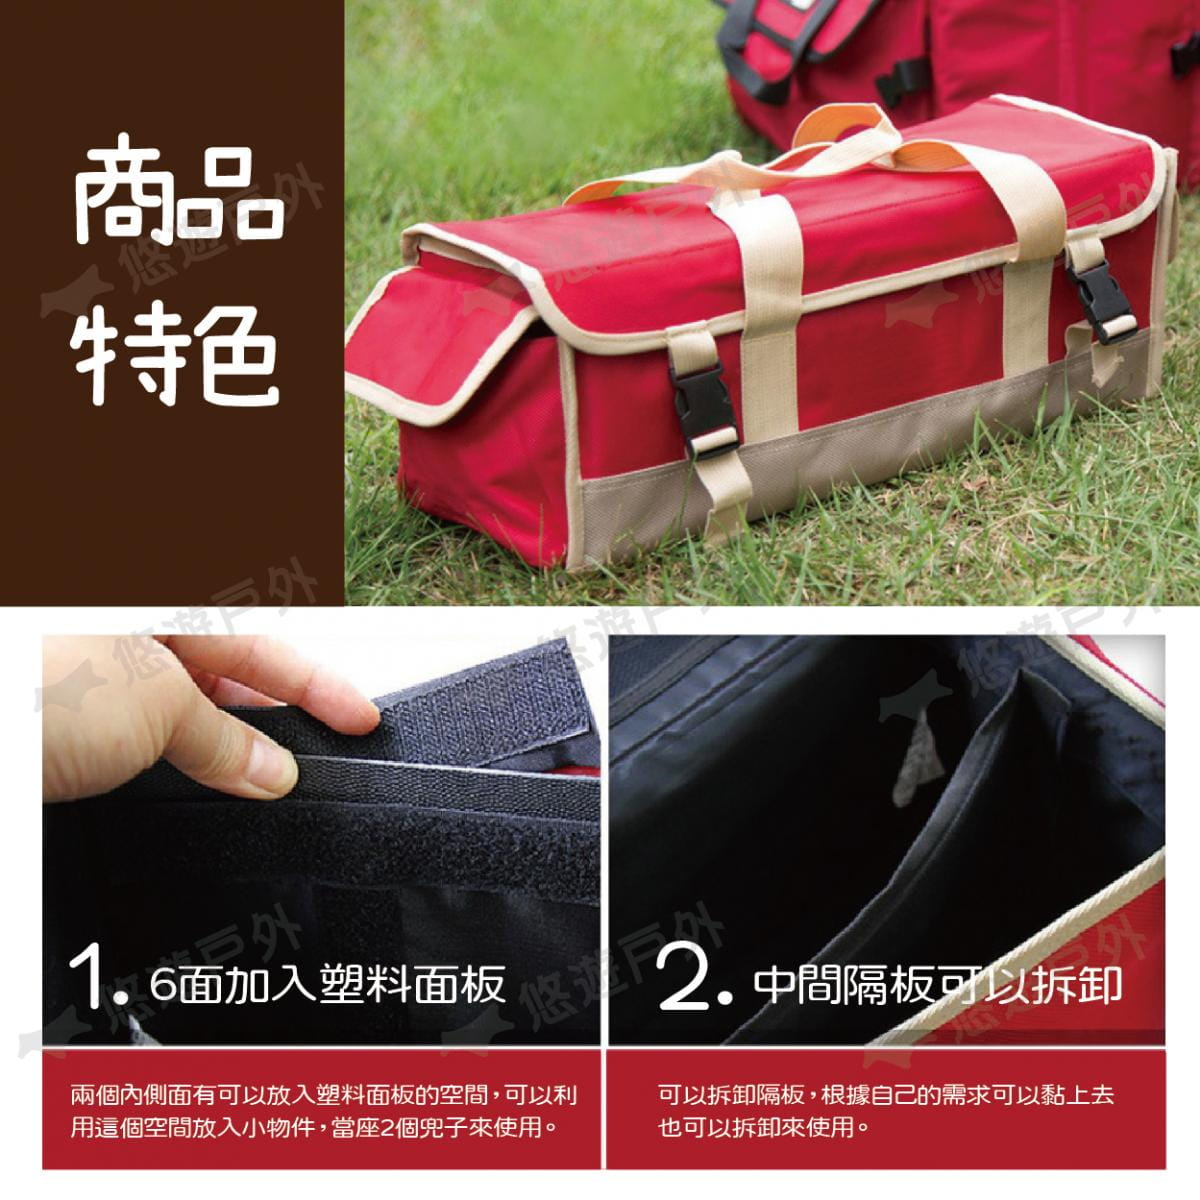 【CLS】韓國 牛津布大容量裝備工具袋 紅色 1680D 牛津布 裝備袋 工具包 工具袋 居家 露營 2